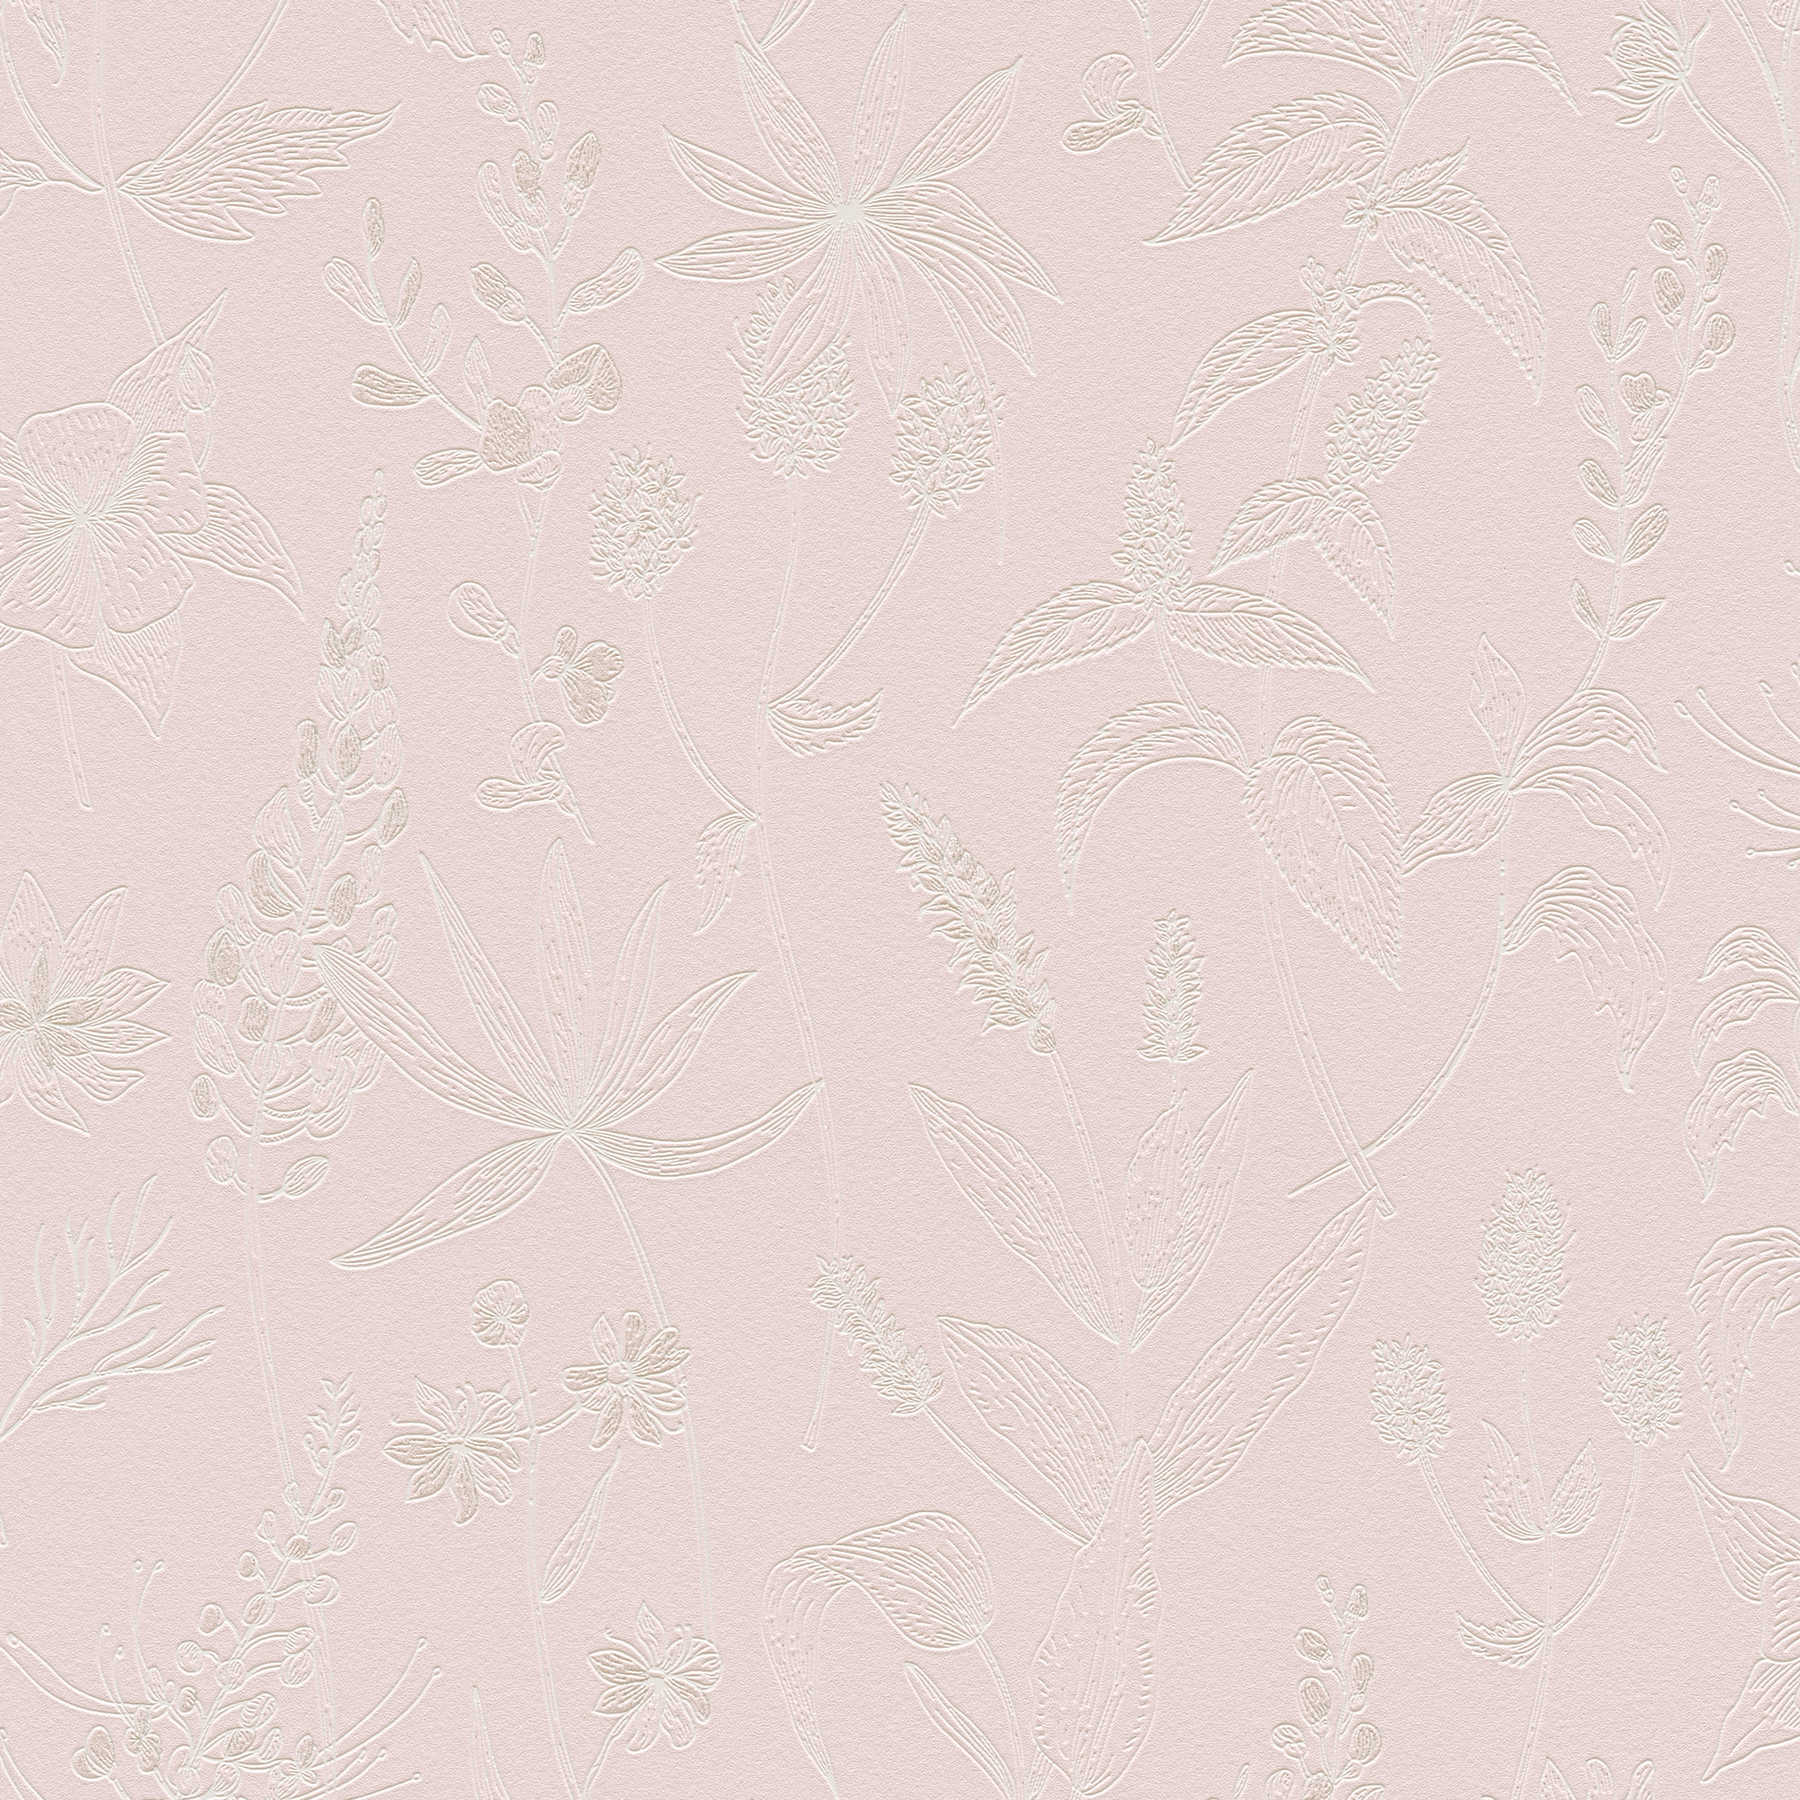         Vliestapete mit Blütenmuster und Metallic-Akzent – Rosa, Silber, Weiß
    